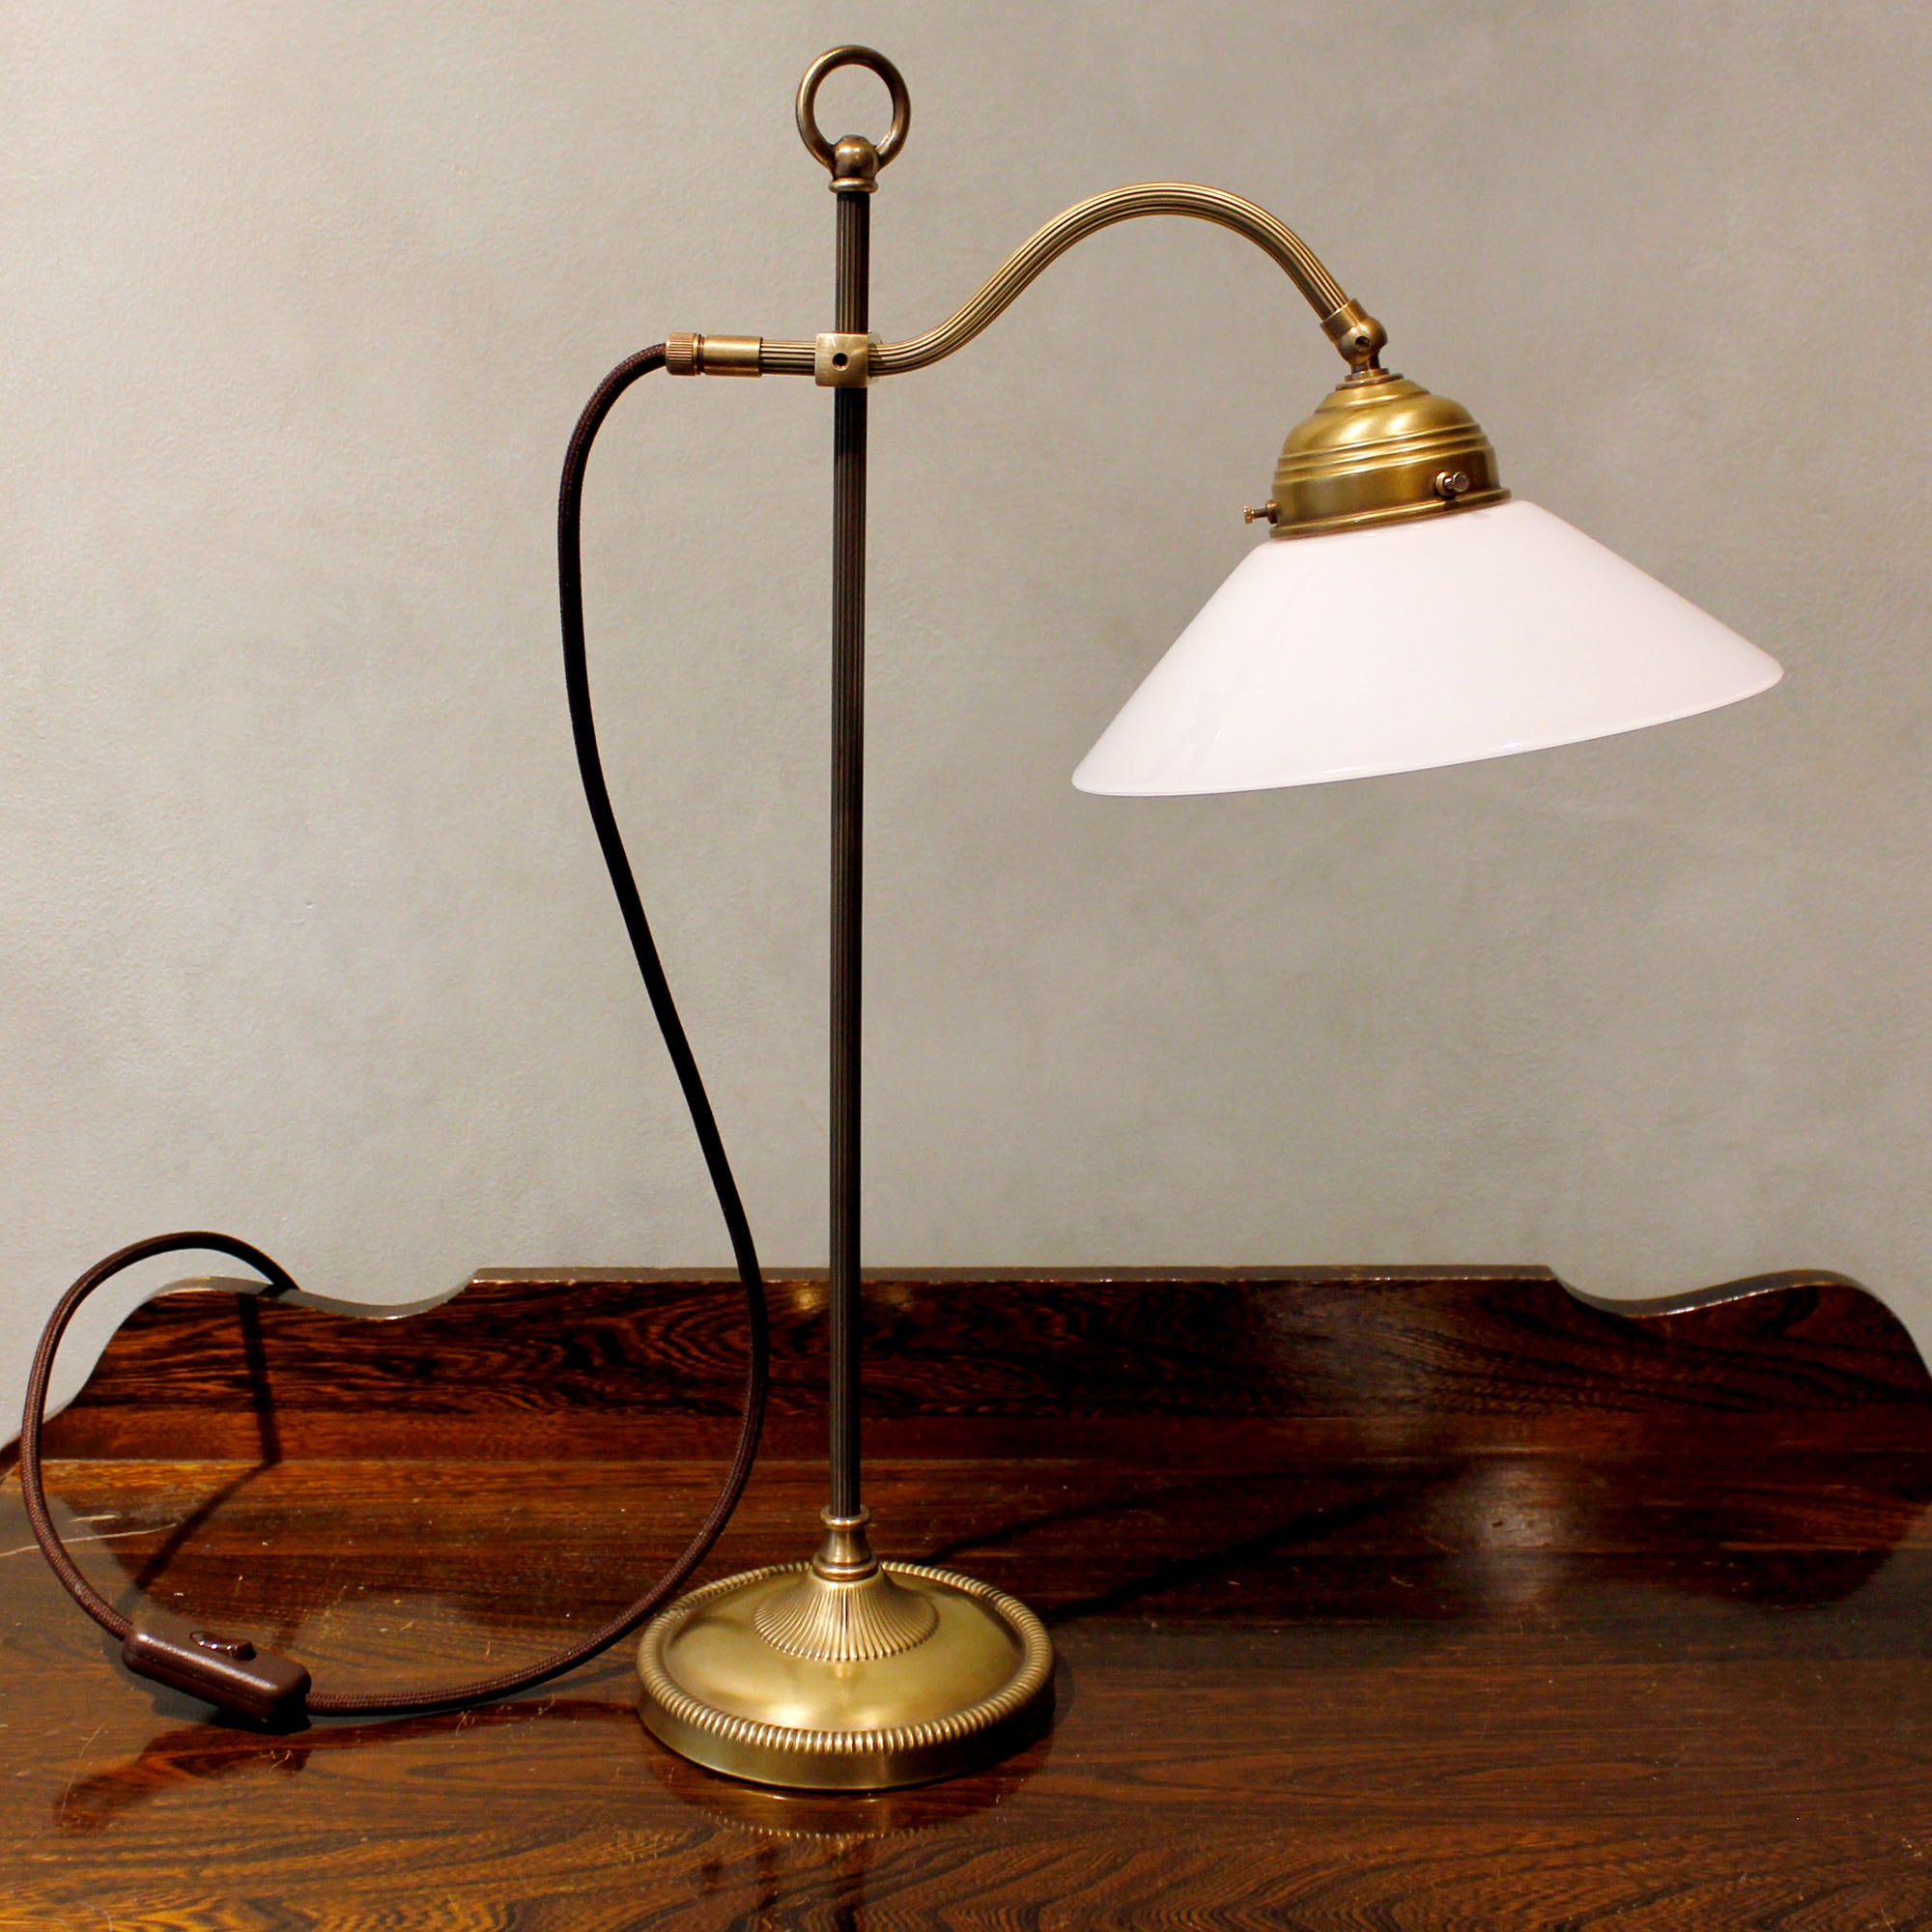 Art Nouveau Table Lamp "Curve"